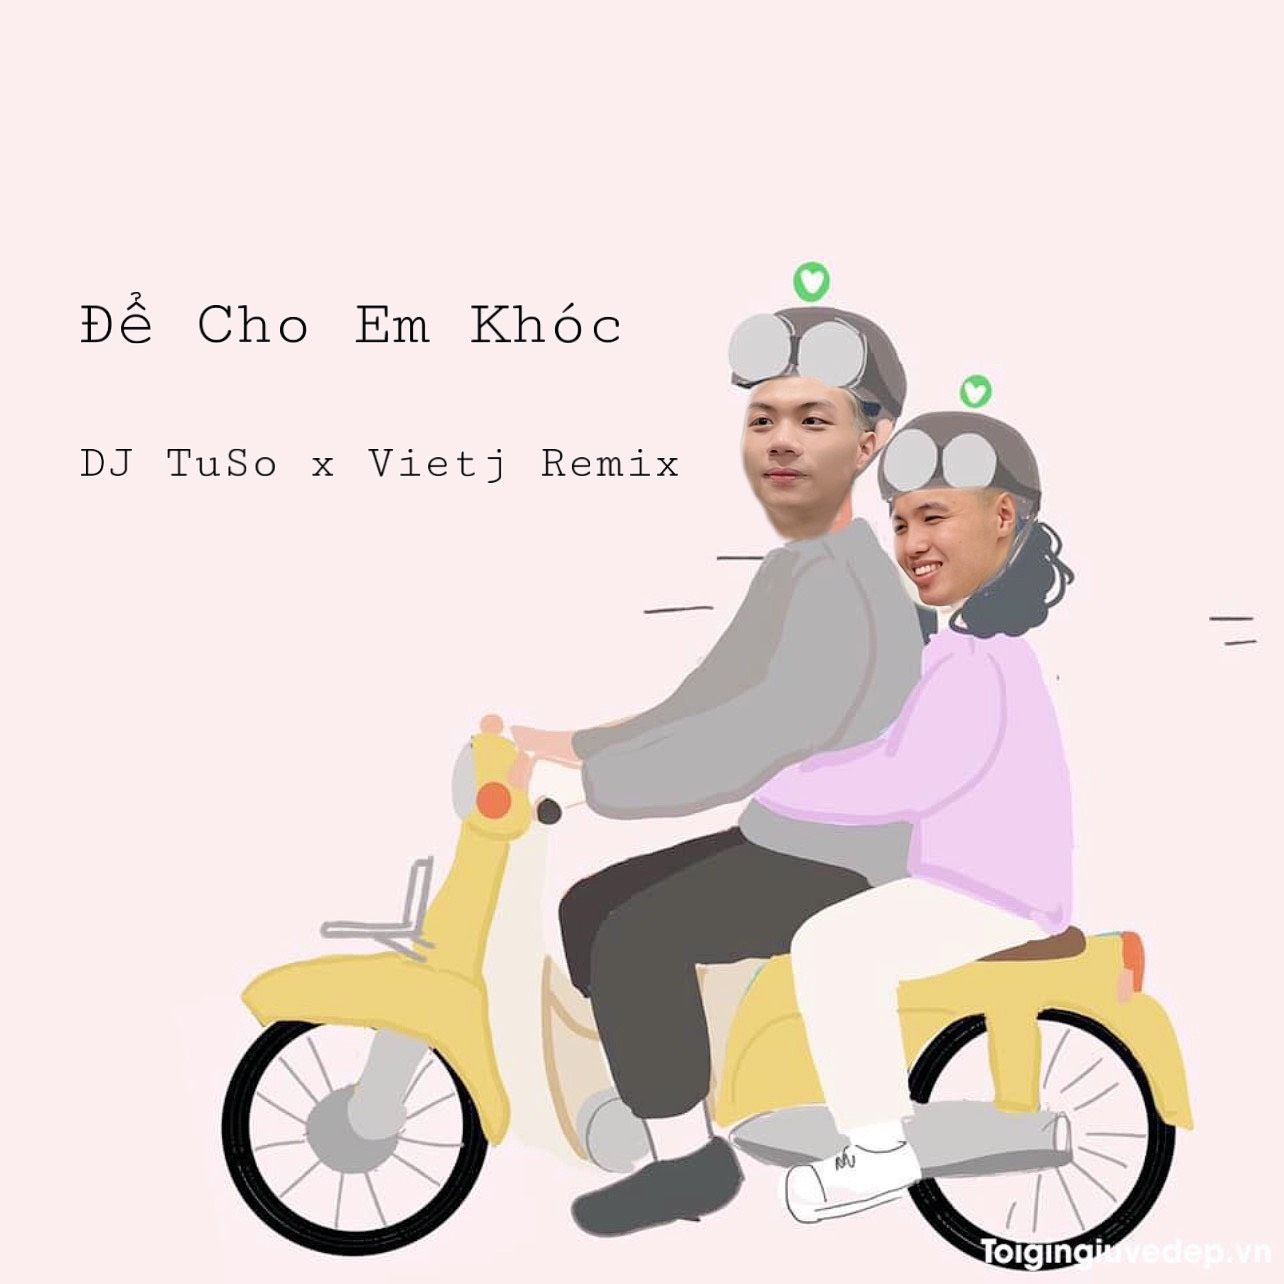 डाउनलोड करा Để Cho Em Khóc  -  DJ TuSo x Vietj Remix